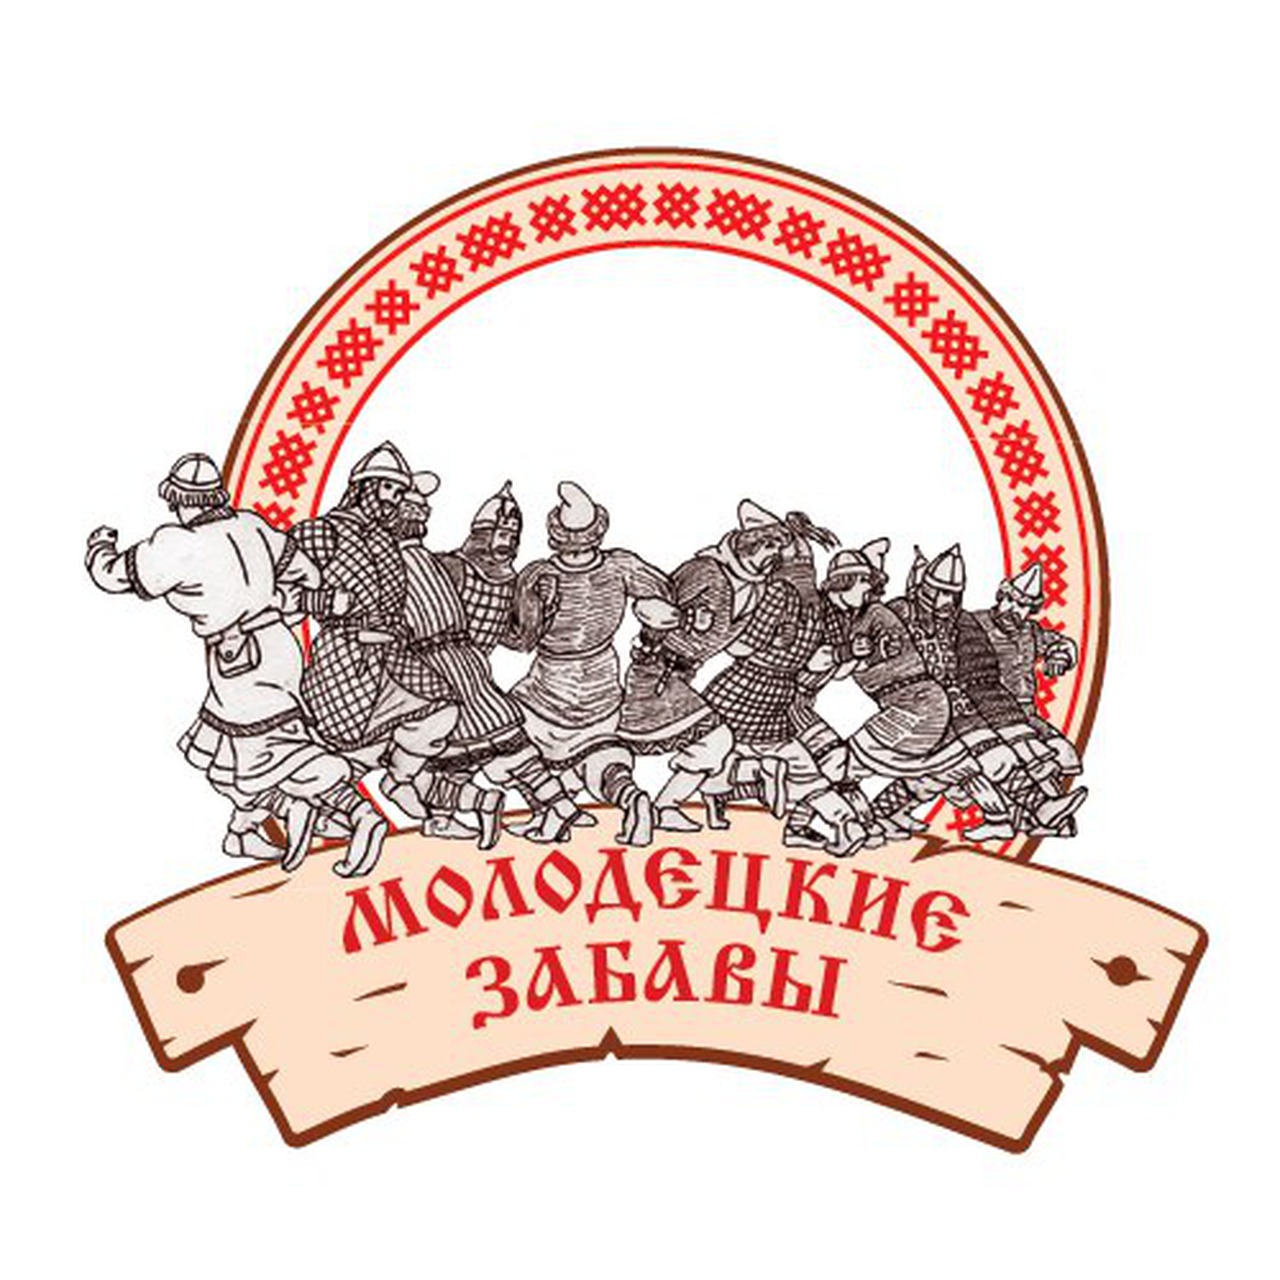 Фестиваль этноспорта "Русские игры"